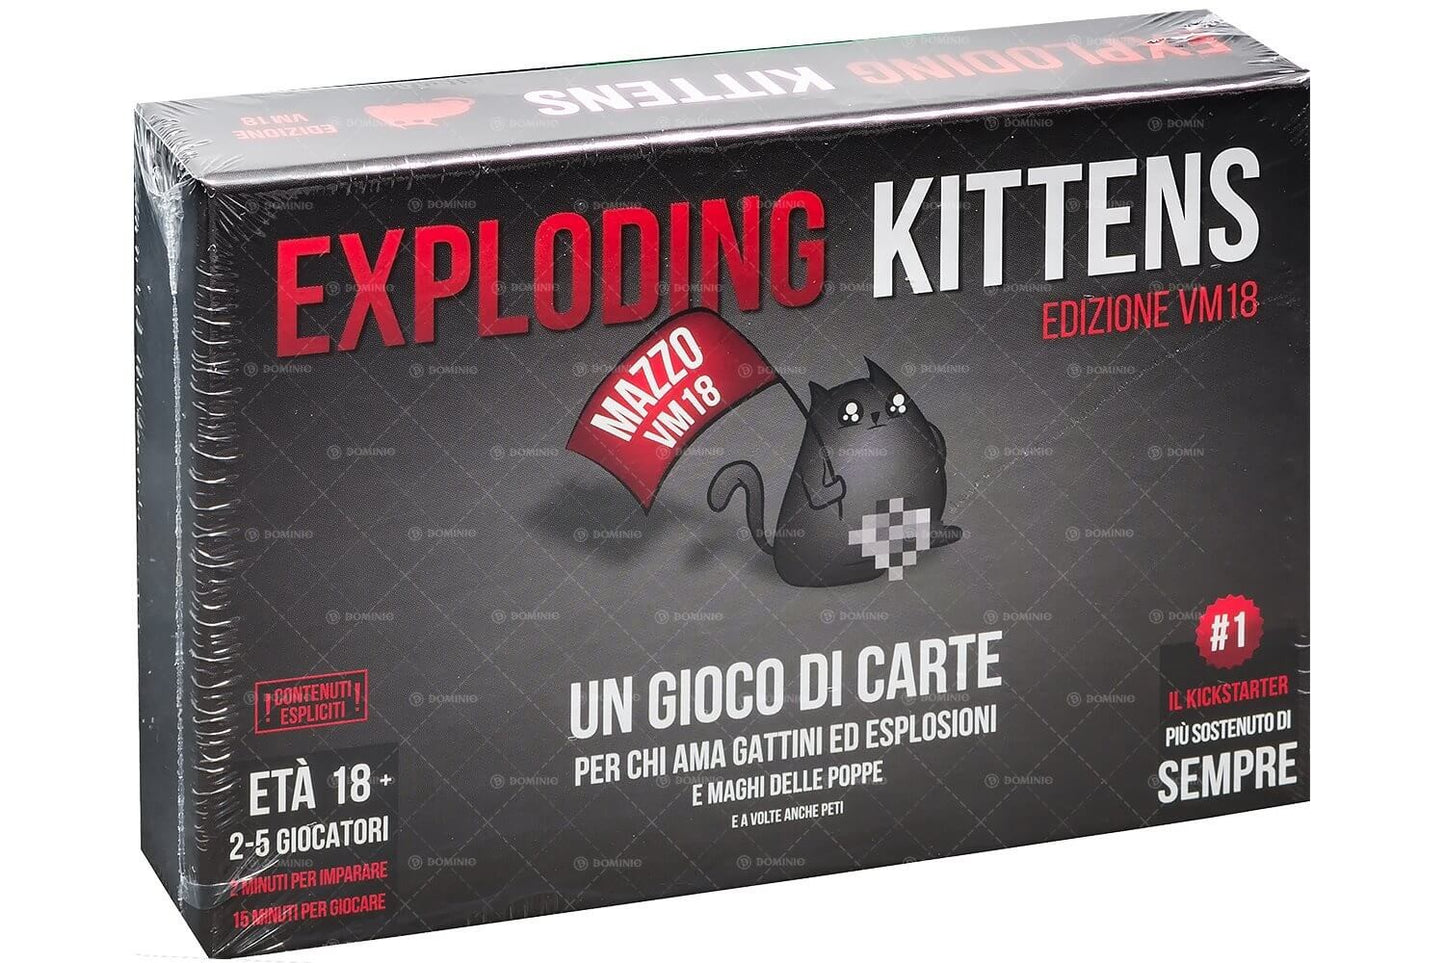 Exploding Kittens VM 18